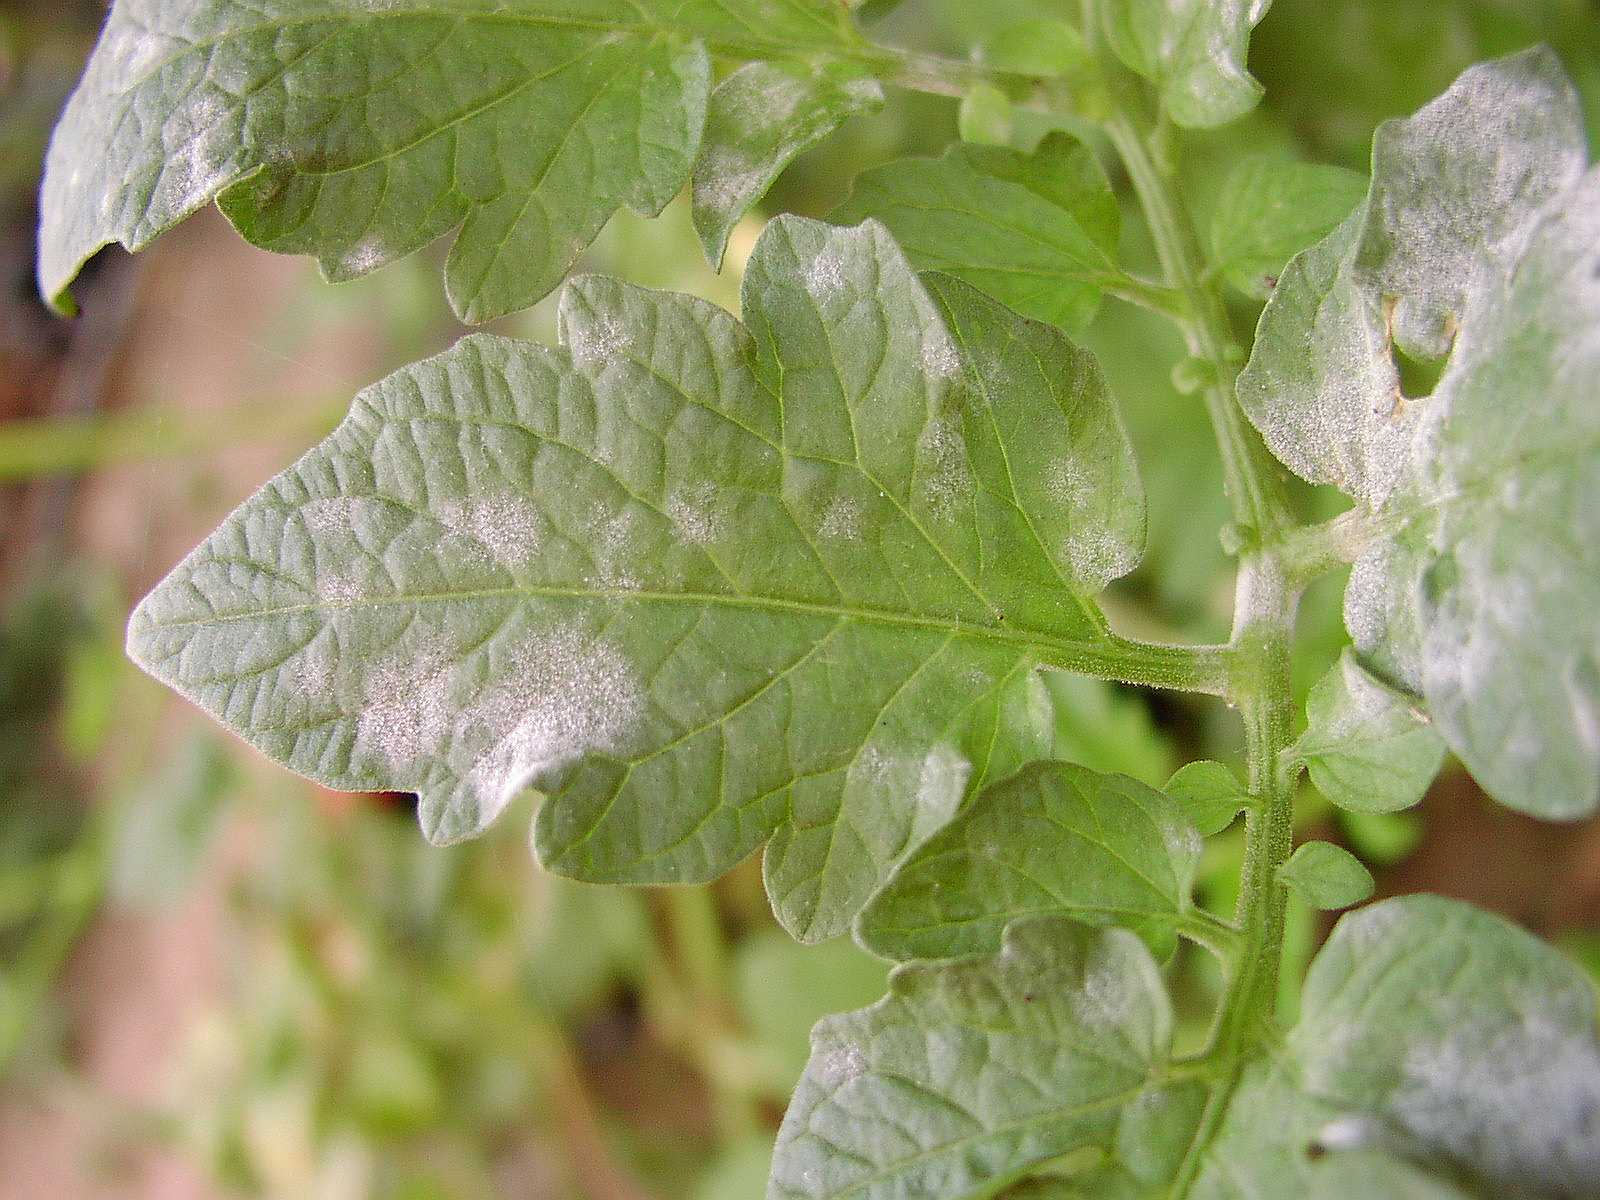 Tomato leaf, powdery mildew